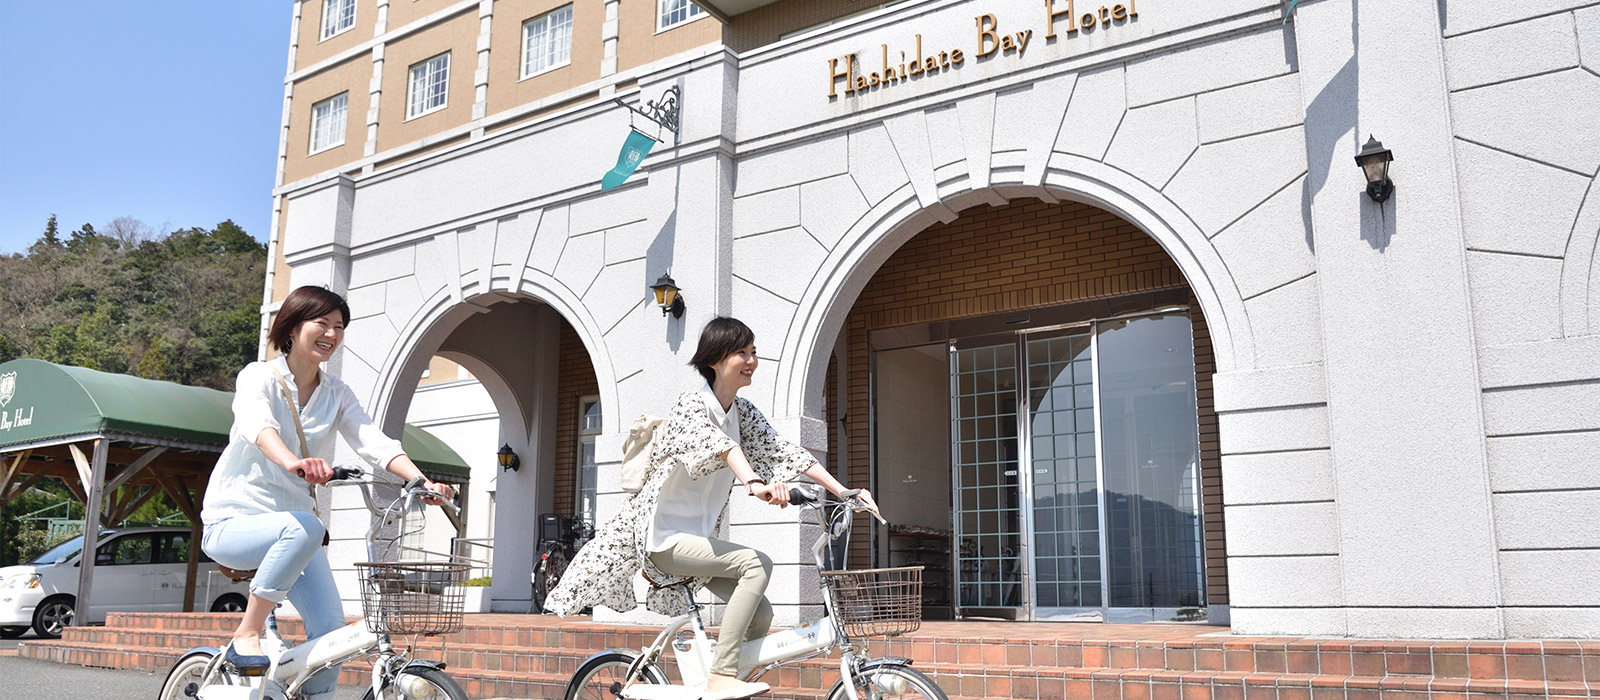 橋立灣飯店 Hashidate bay hotel:bicycle for rent